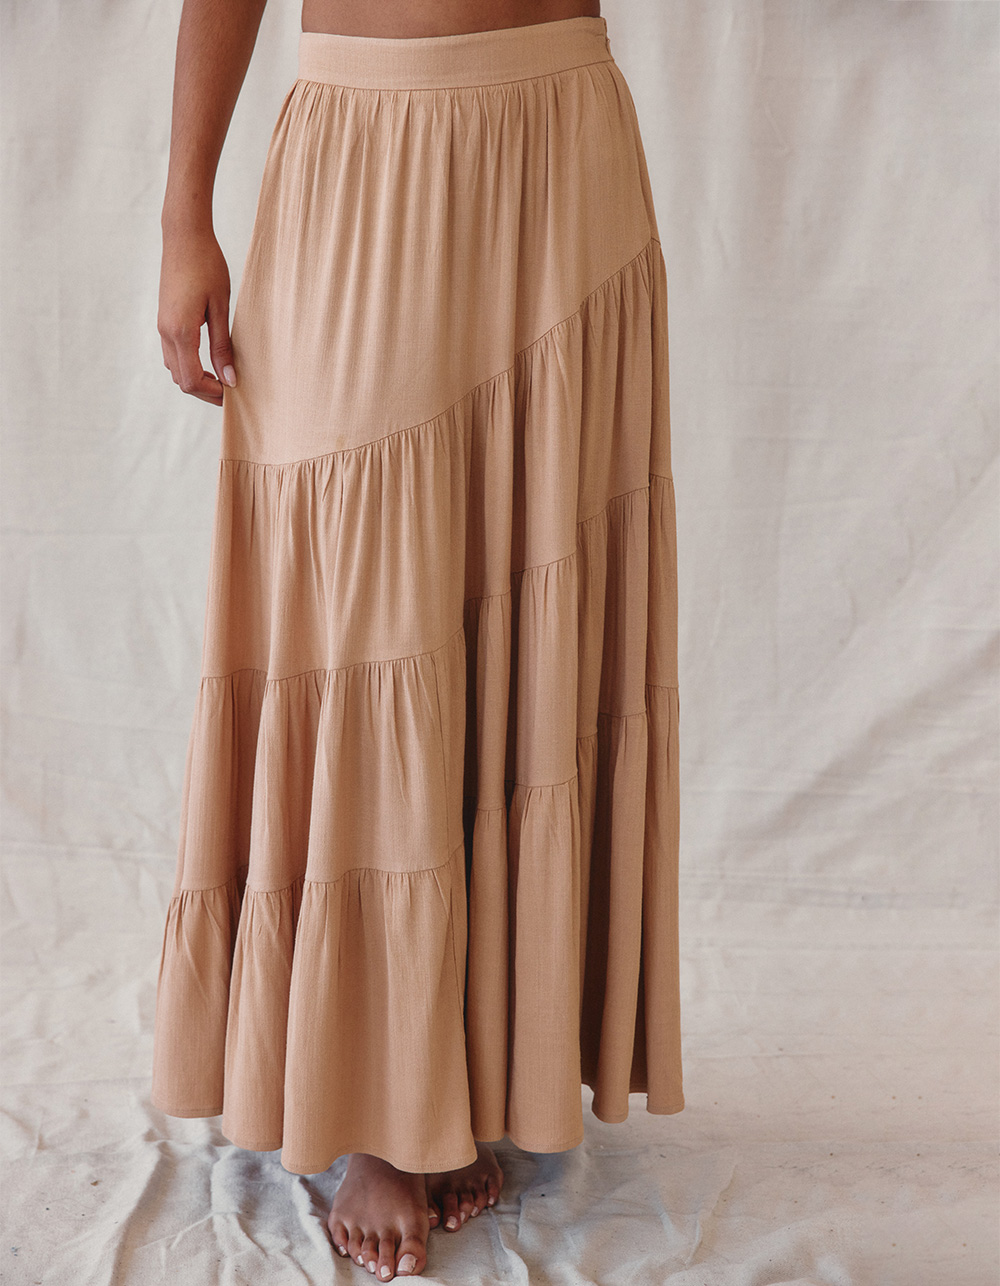 WEST OF MELROSE Skirt TAN Womens Maxi Asymmetrical | Ruffle Tillys 